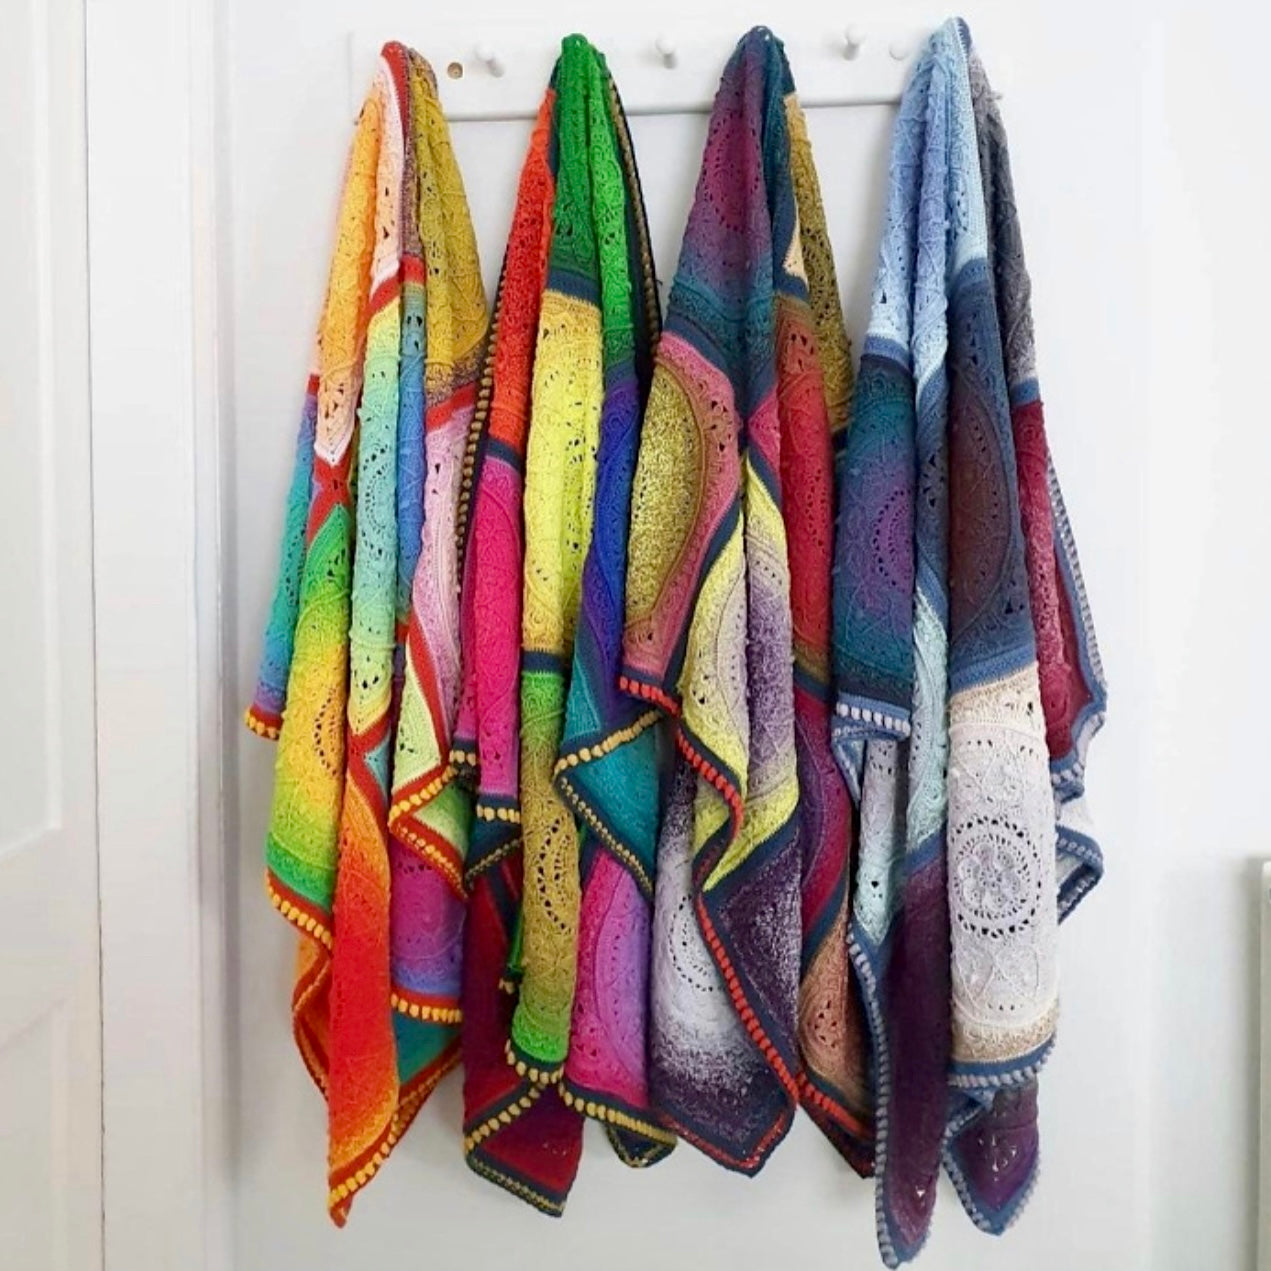 Sophie's Dream Yarn Kits